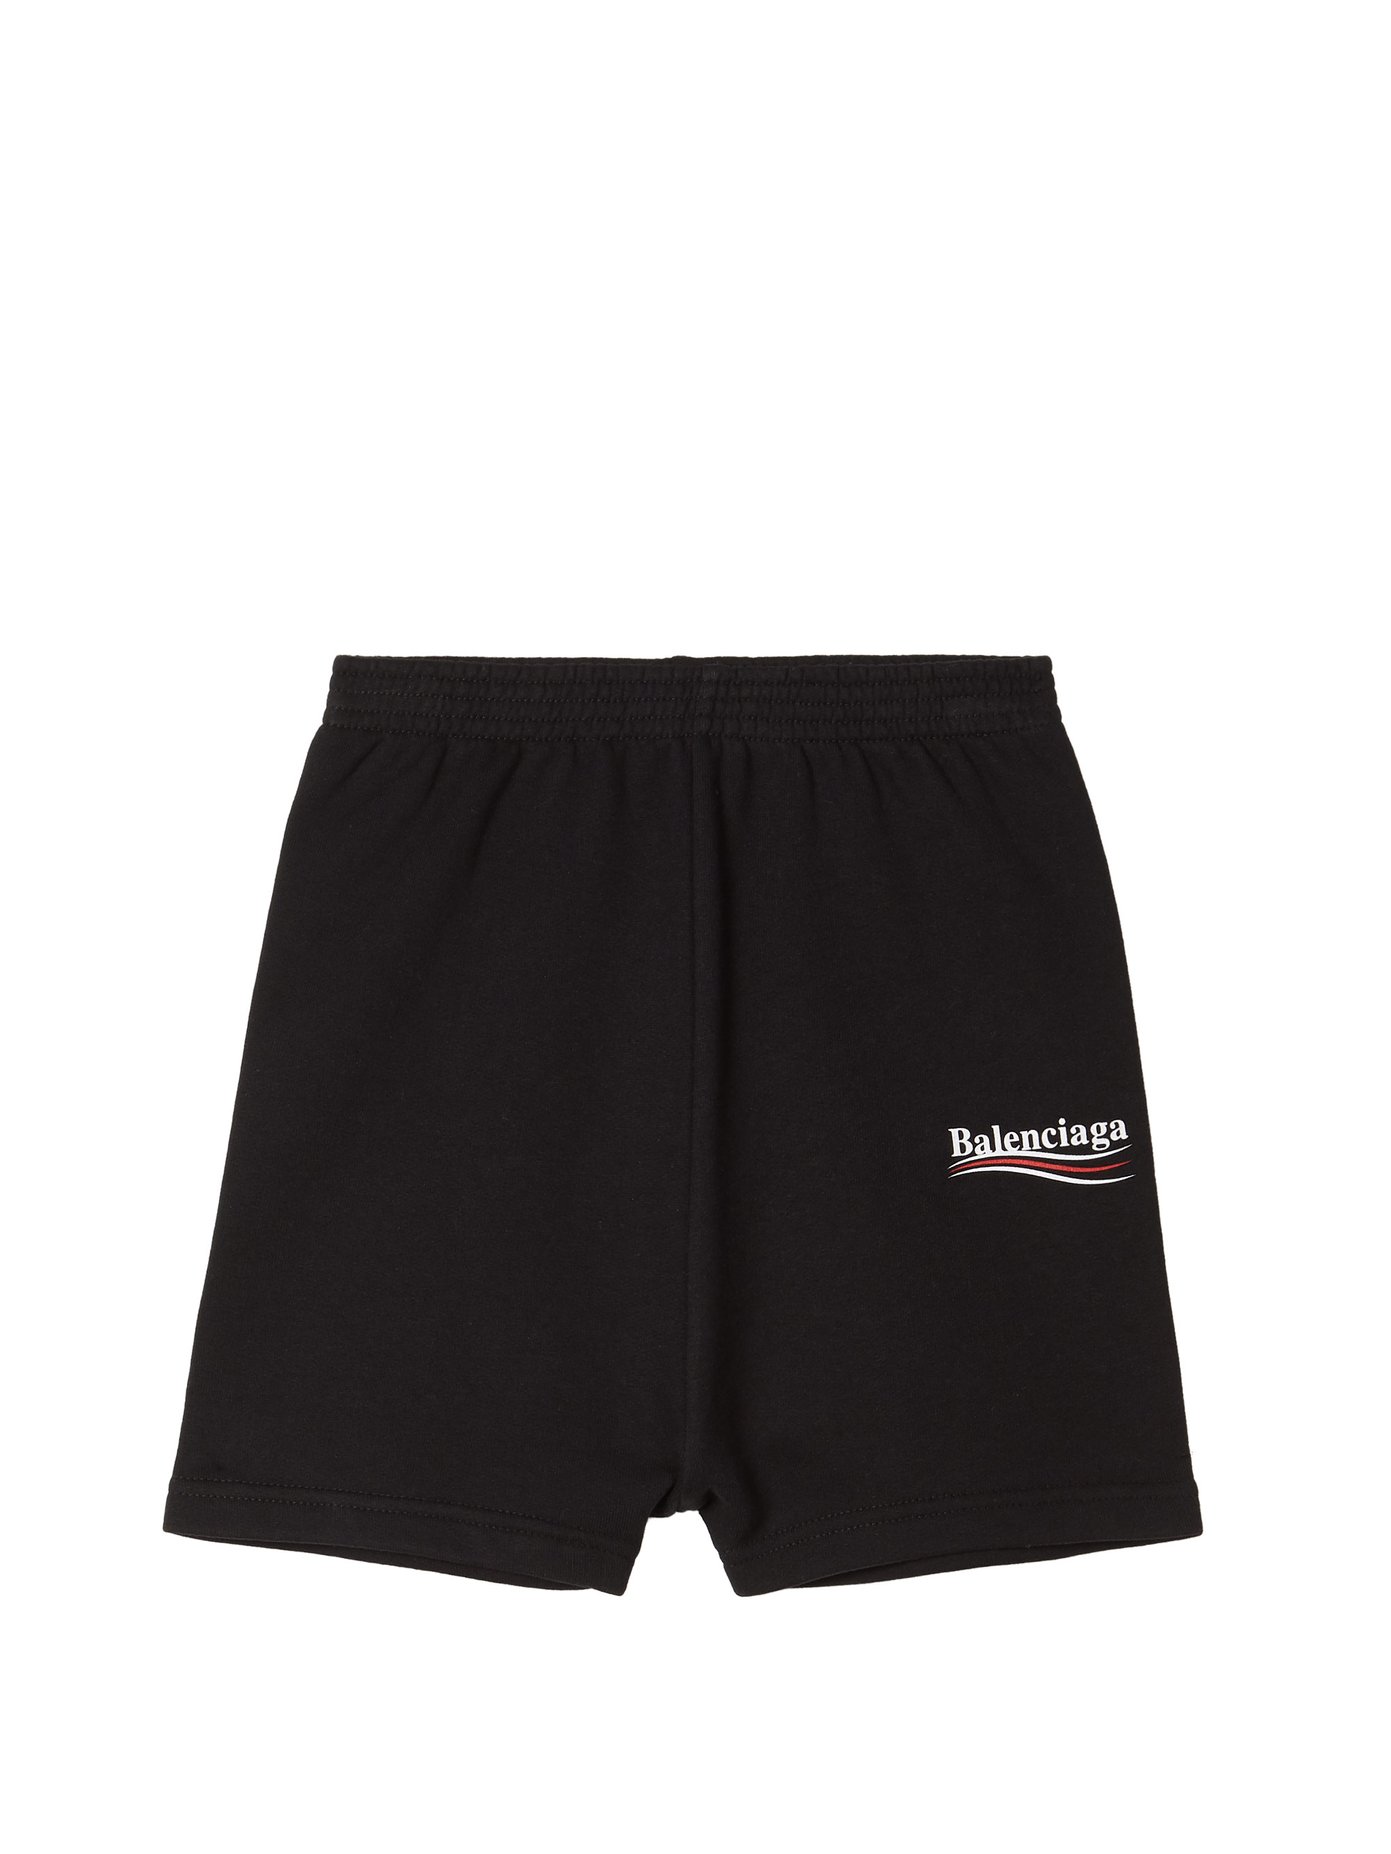 Unisex cotton-blend shorts | Balenciaga 